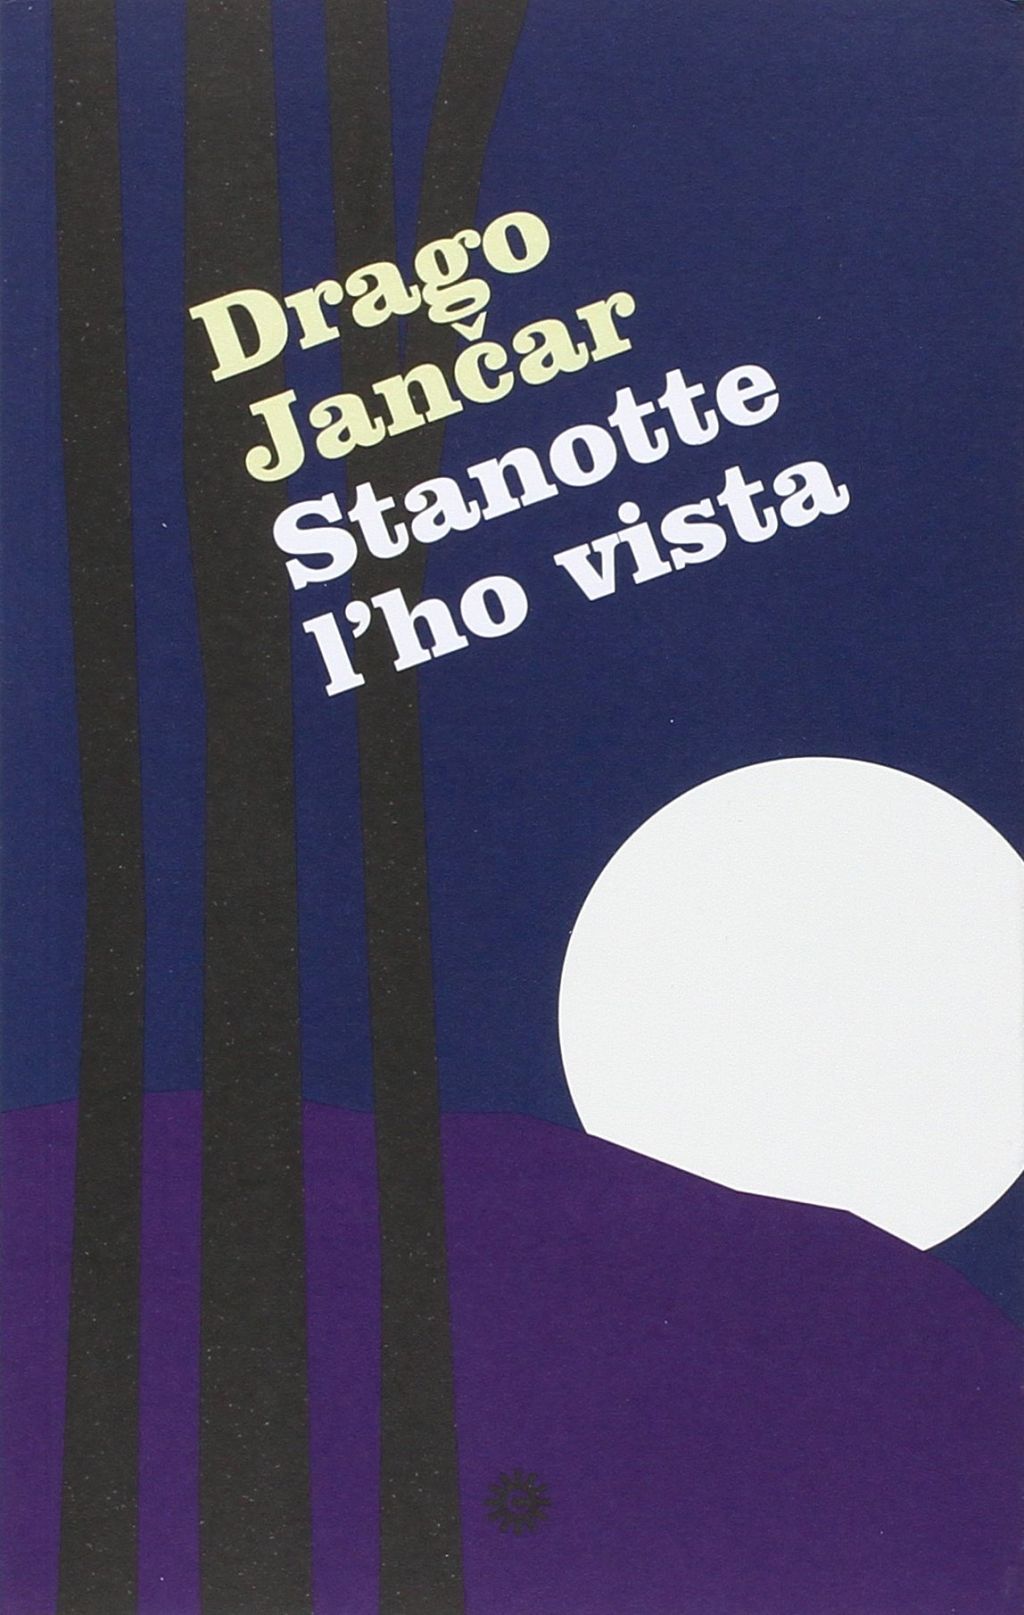 Stanotte l’ho vista (publikacija v italijanskem jeziku)